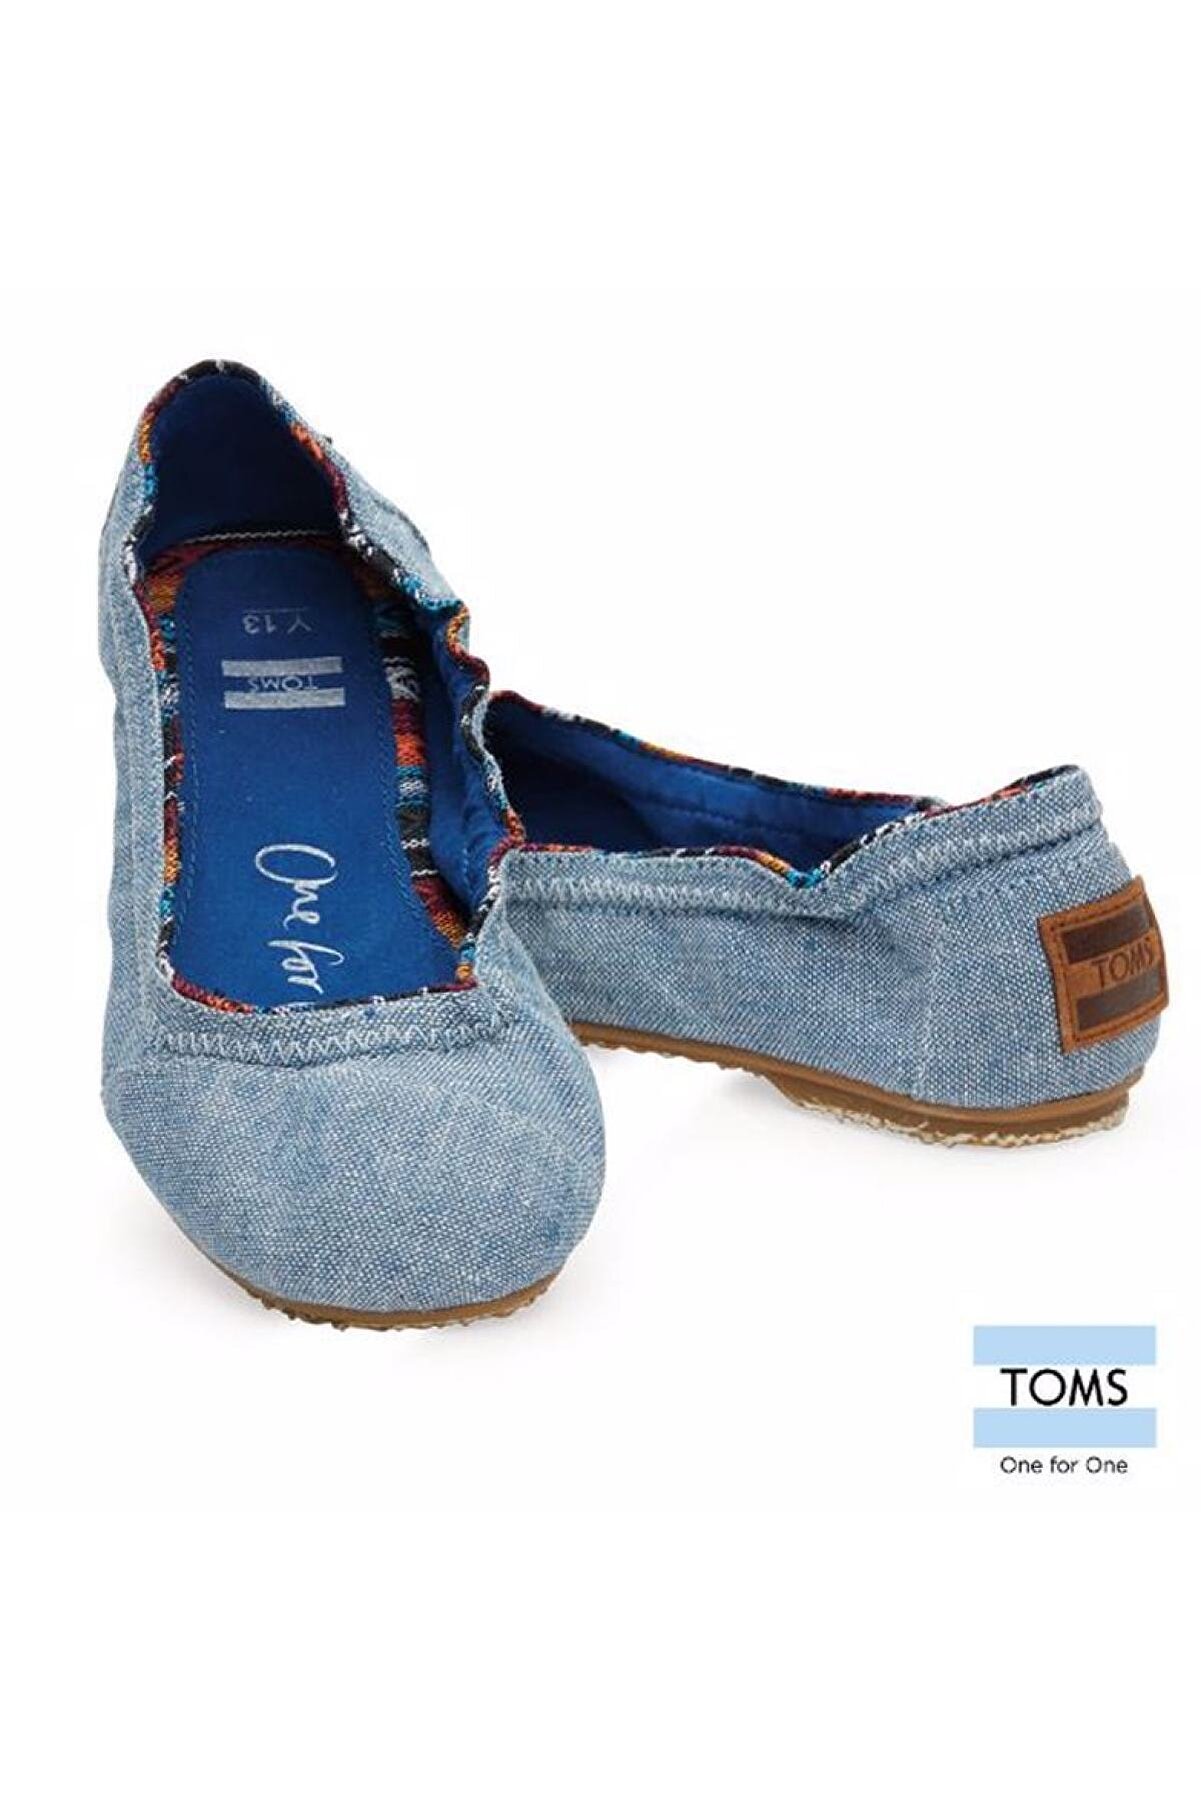 Toms Cocuk Babet Ayakkabı